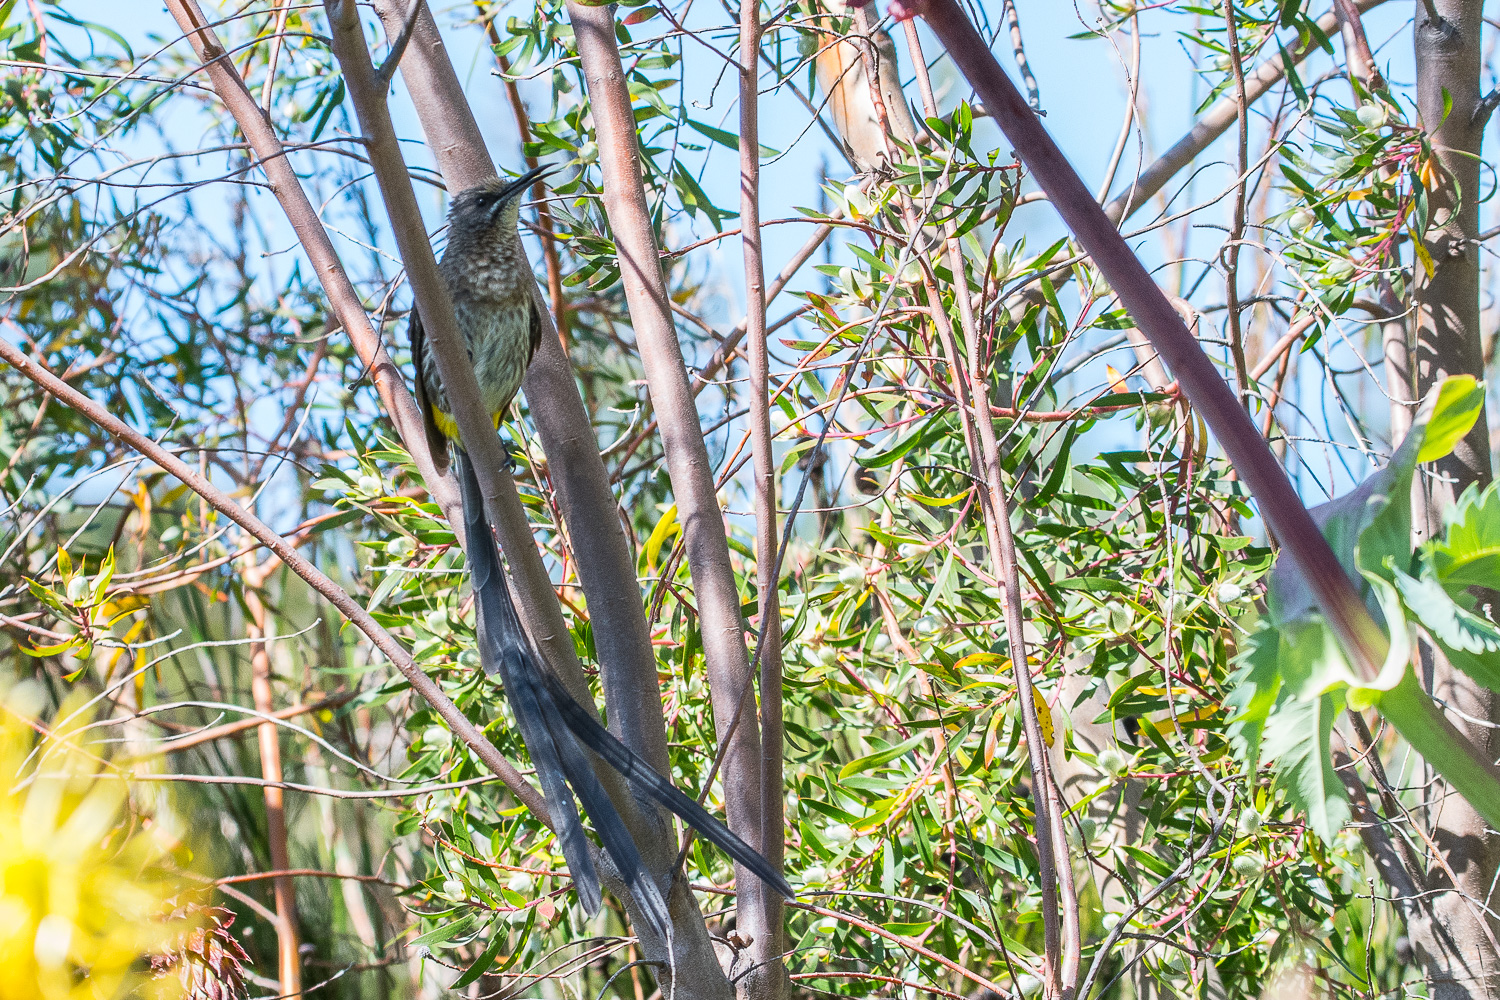 Promerops du Cap mâle adulte (Cape sugarbird, Promerops cafer) chantant, Kirstenbosch National Botanical Gardens, Western Cape, Afrique du sud.